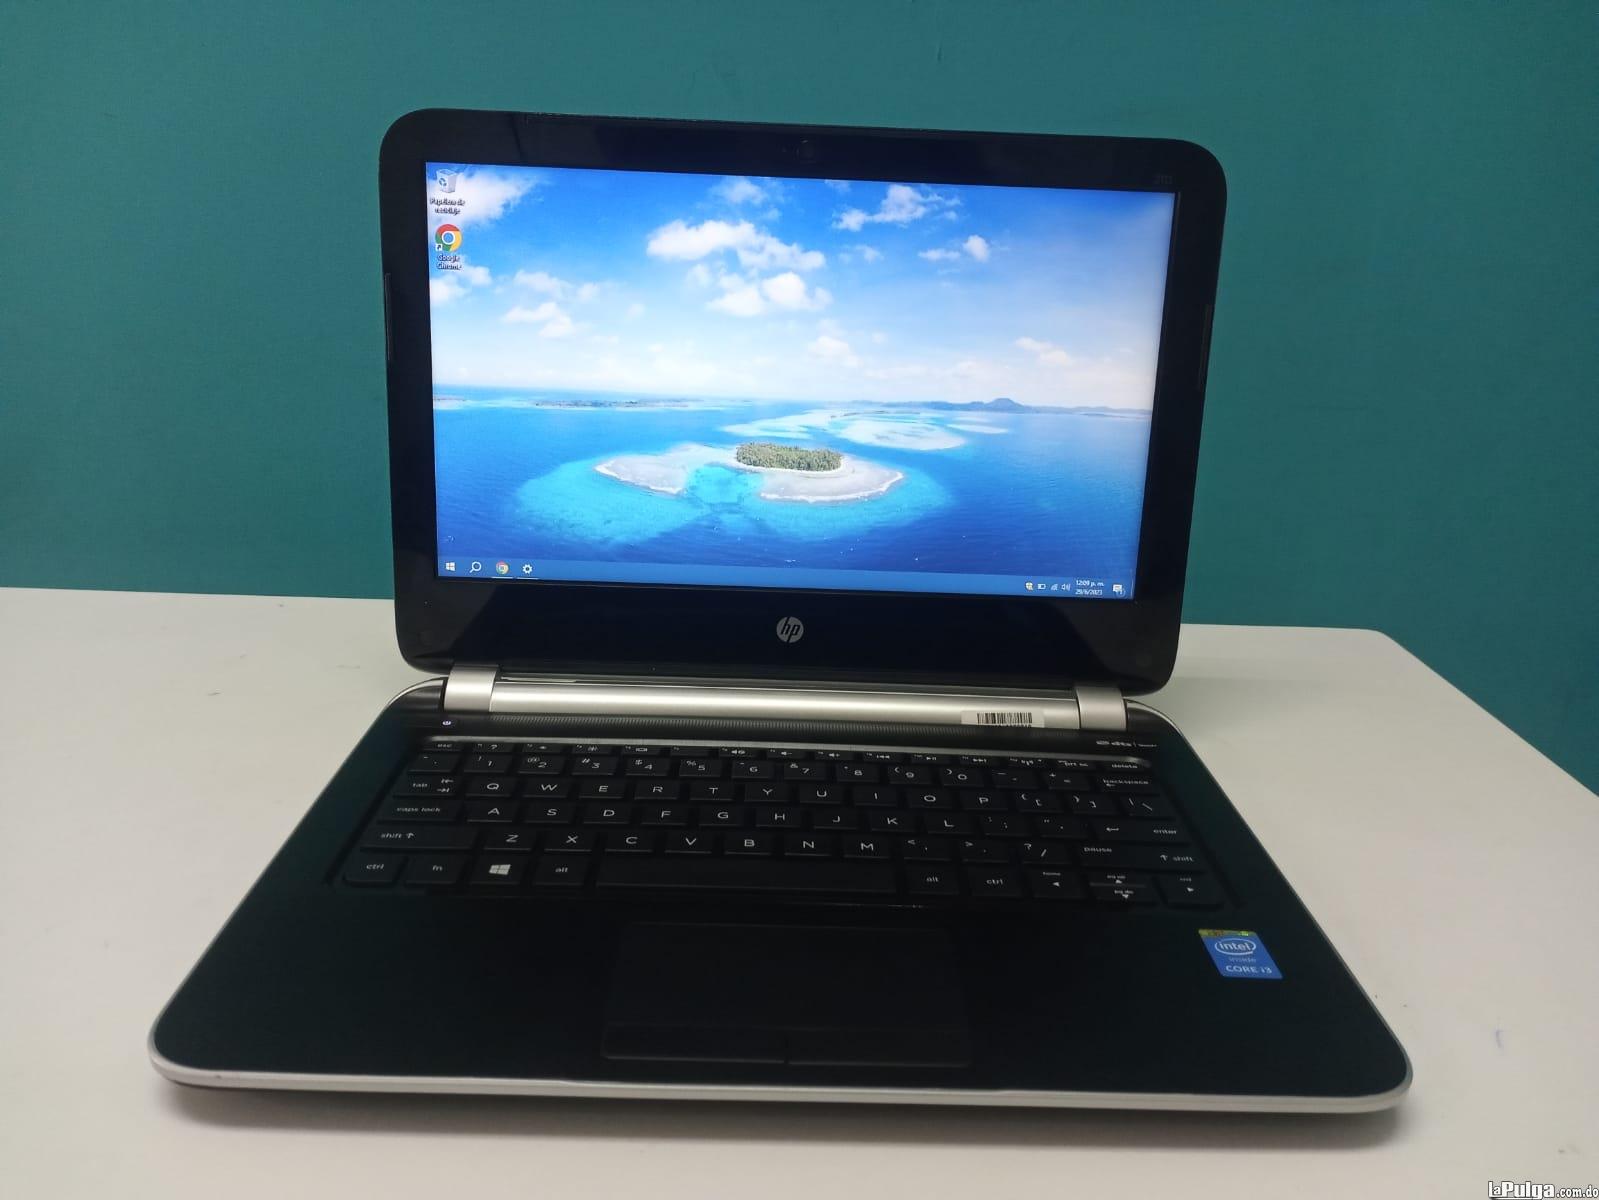 Laptop HP 210 G1 / 4th Gen Intel Core i3 / 4GB DDR3 / 120GB SSD Foto 7162016-3.jpg